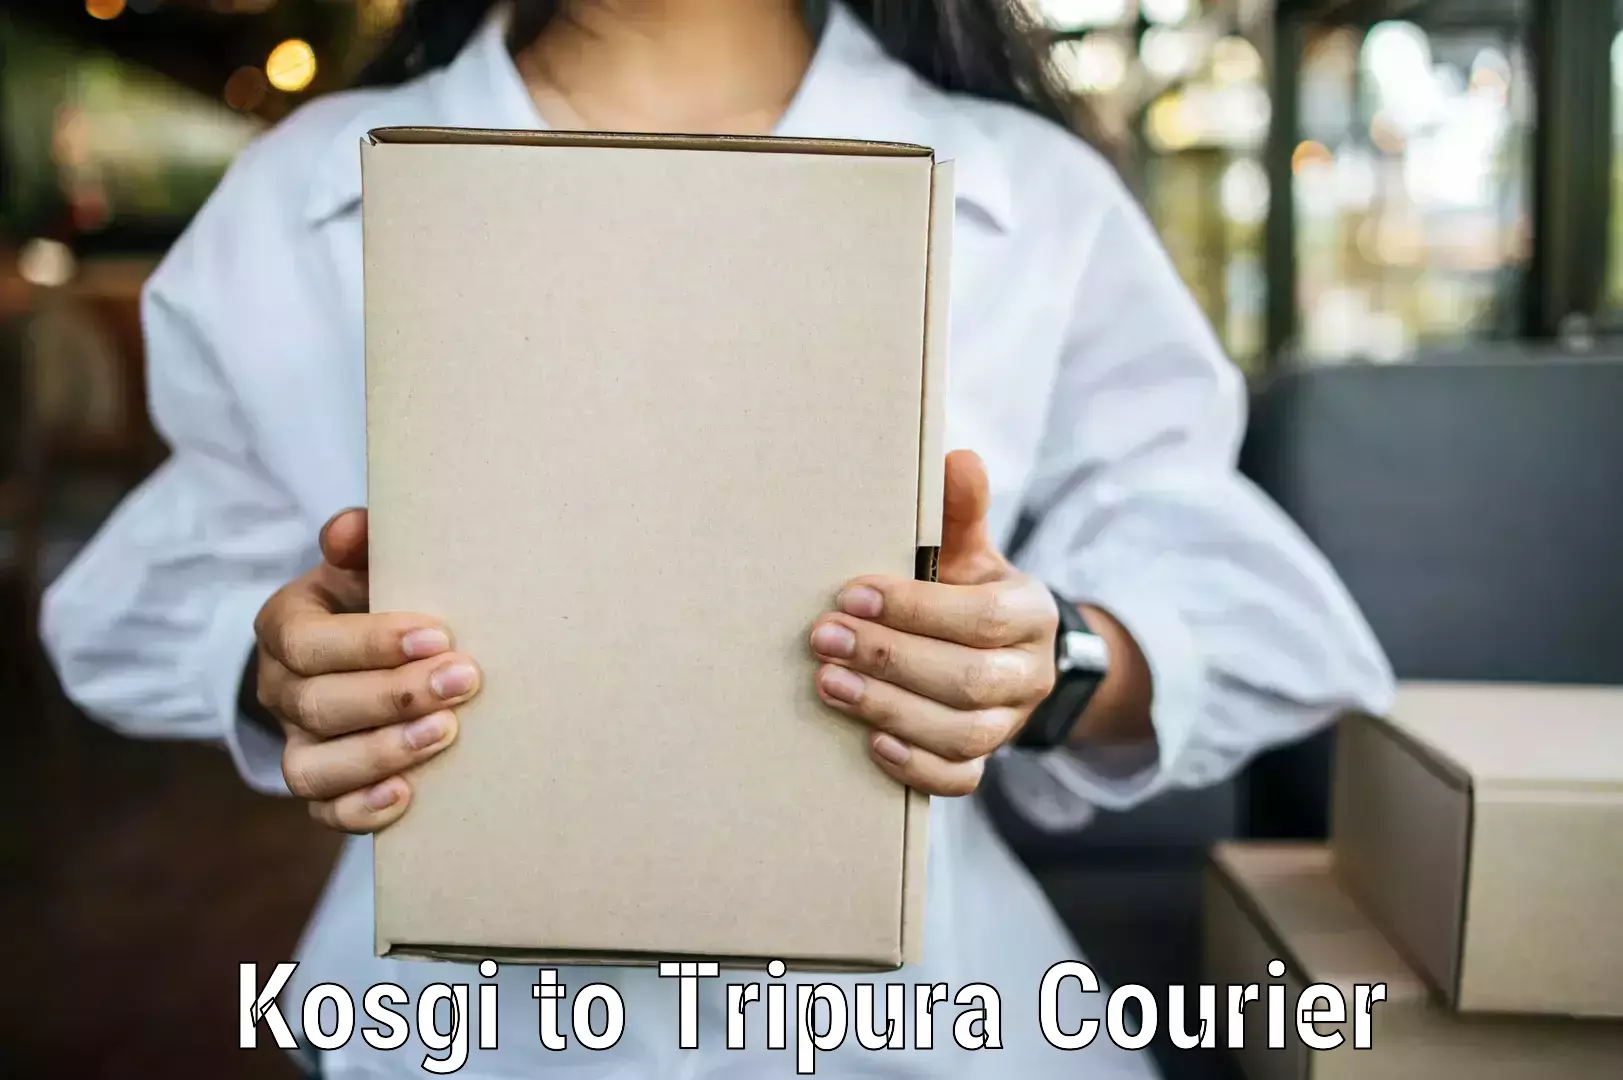 Cost-effective shipping solutions Kosgi to IIIT Agartala